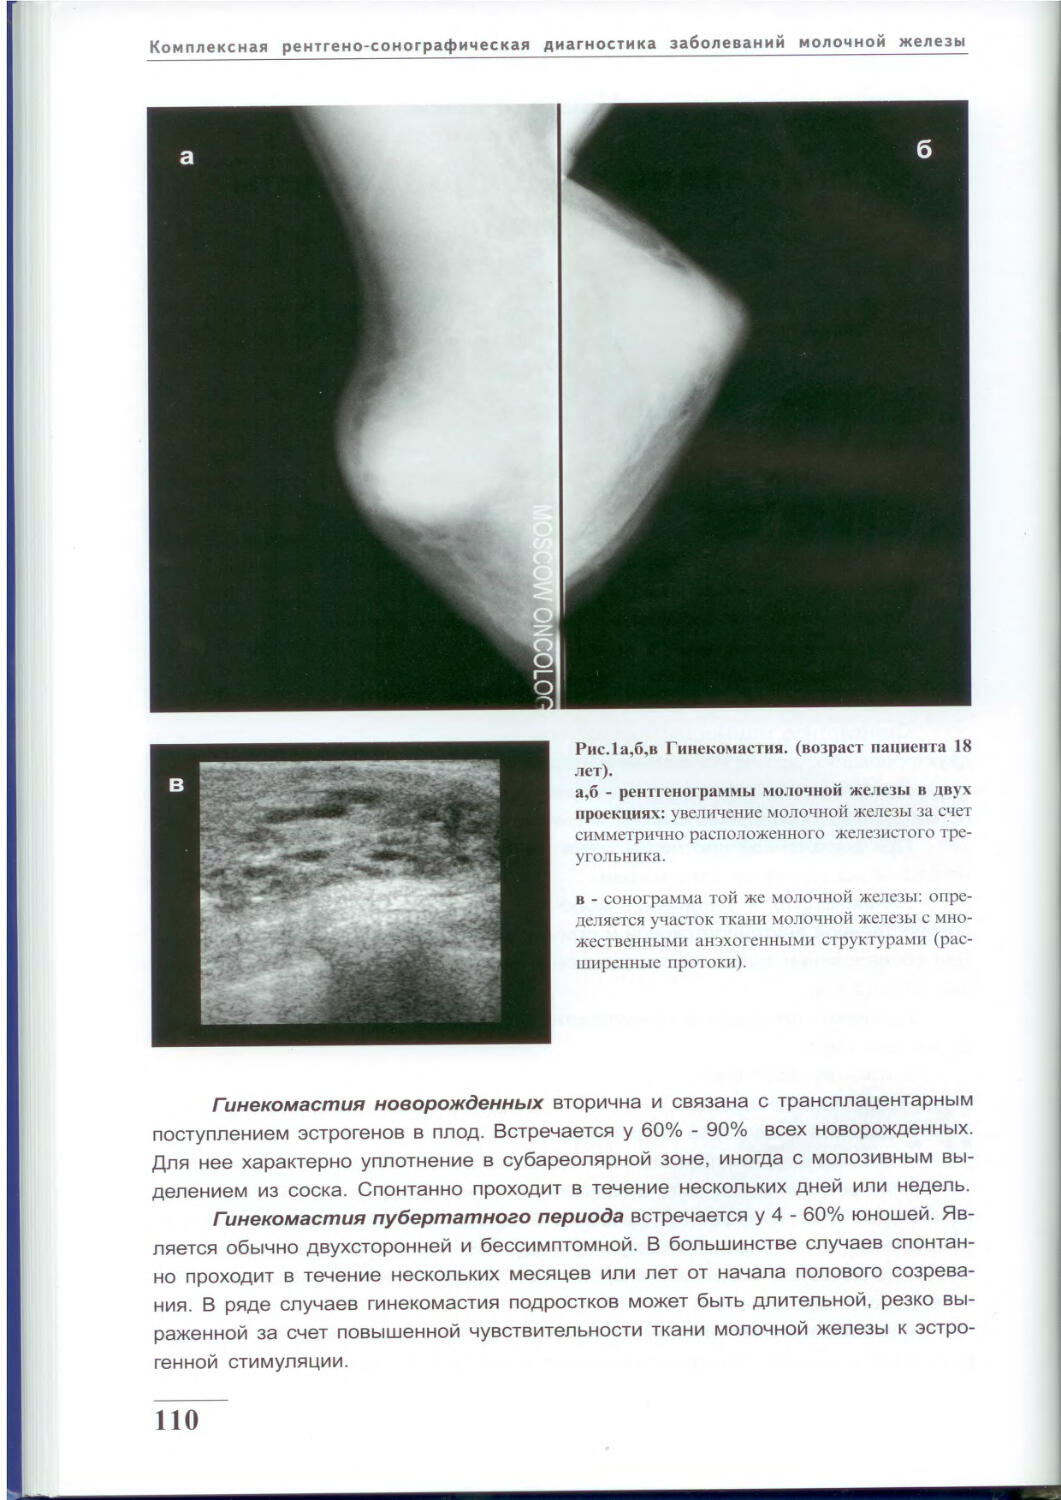 Маммография молочных желез с патологией